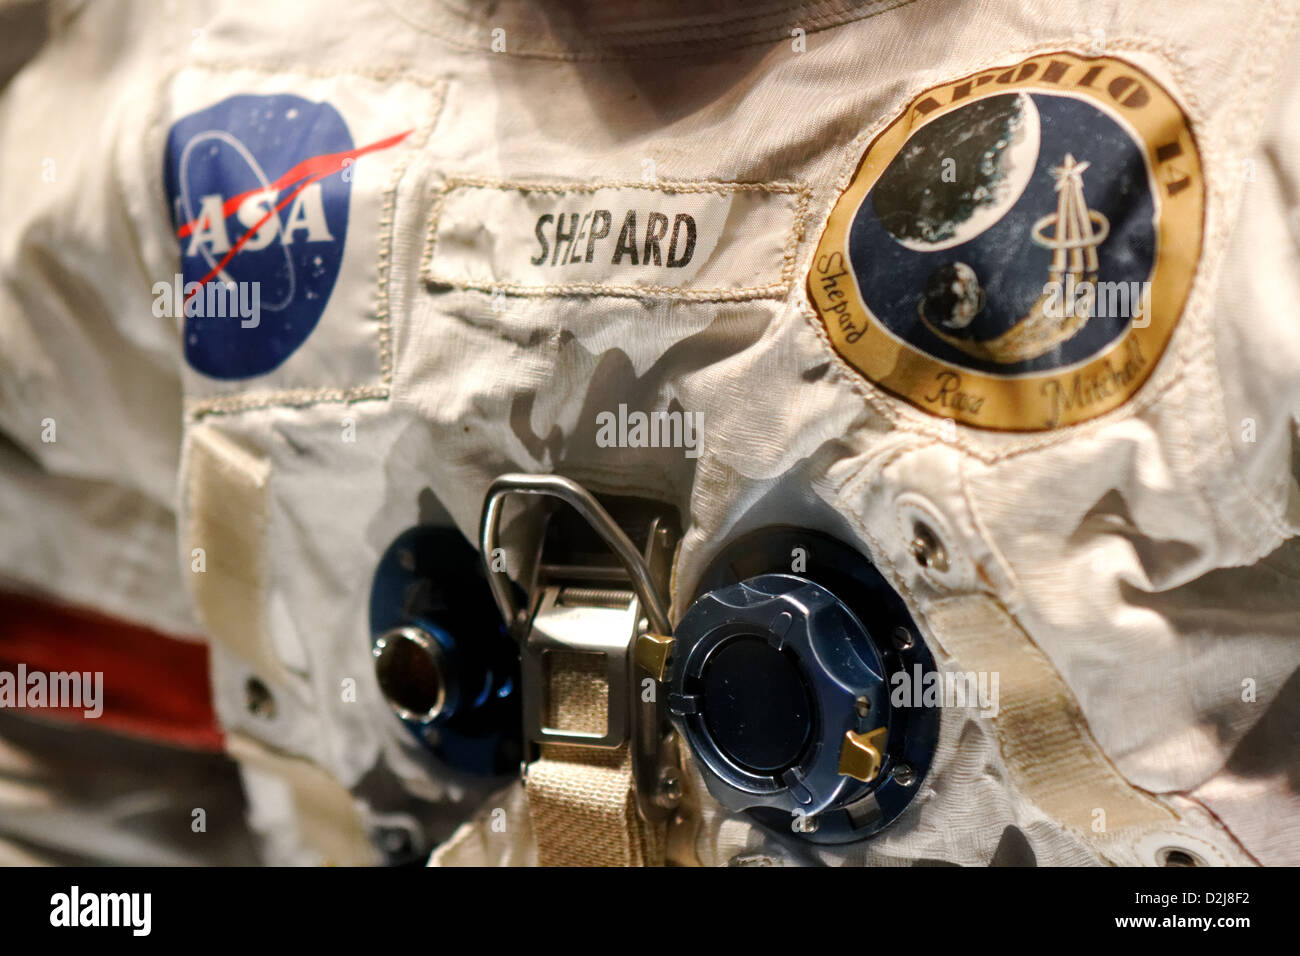 Nasa, Kennedy Space Center, Florida. Alan Shepard Apollo 14 Suit. Stock Photo